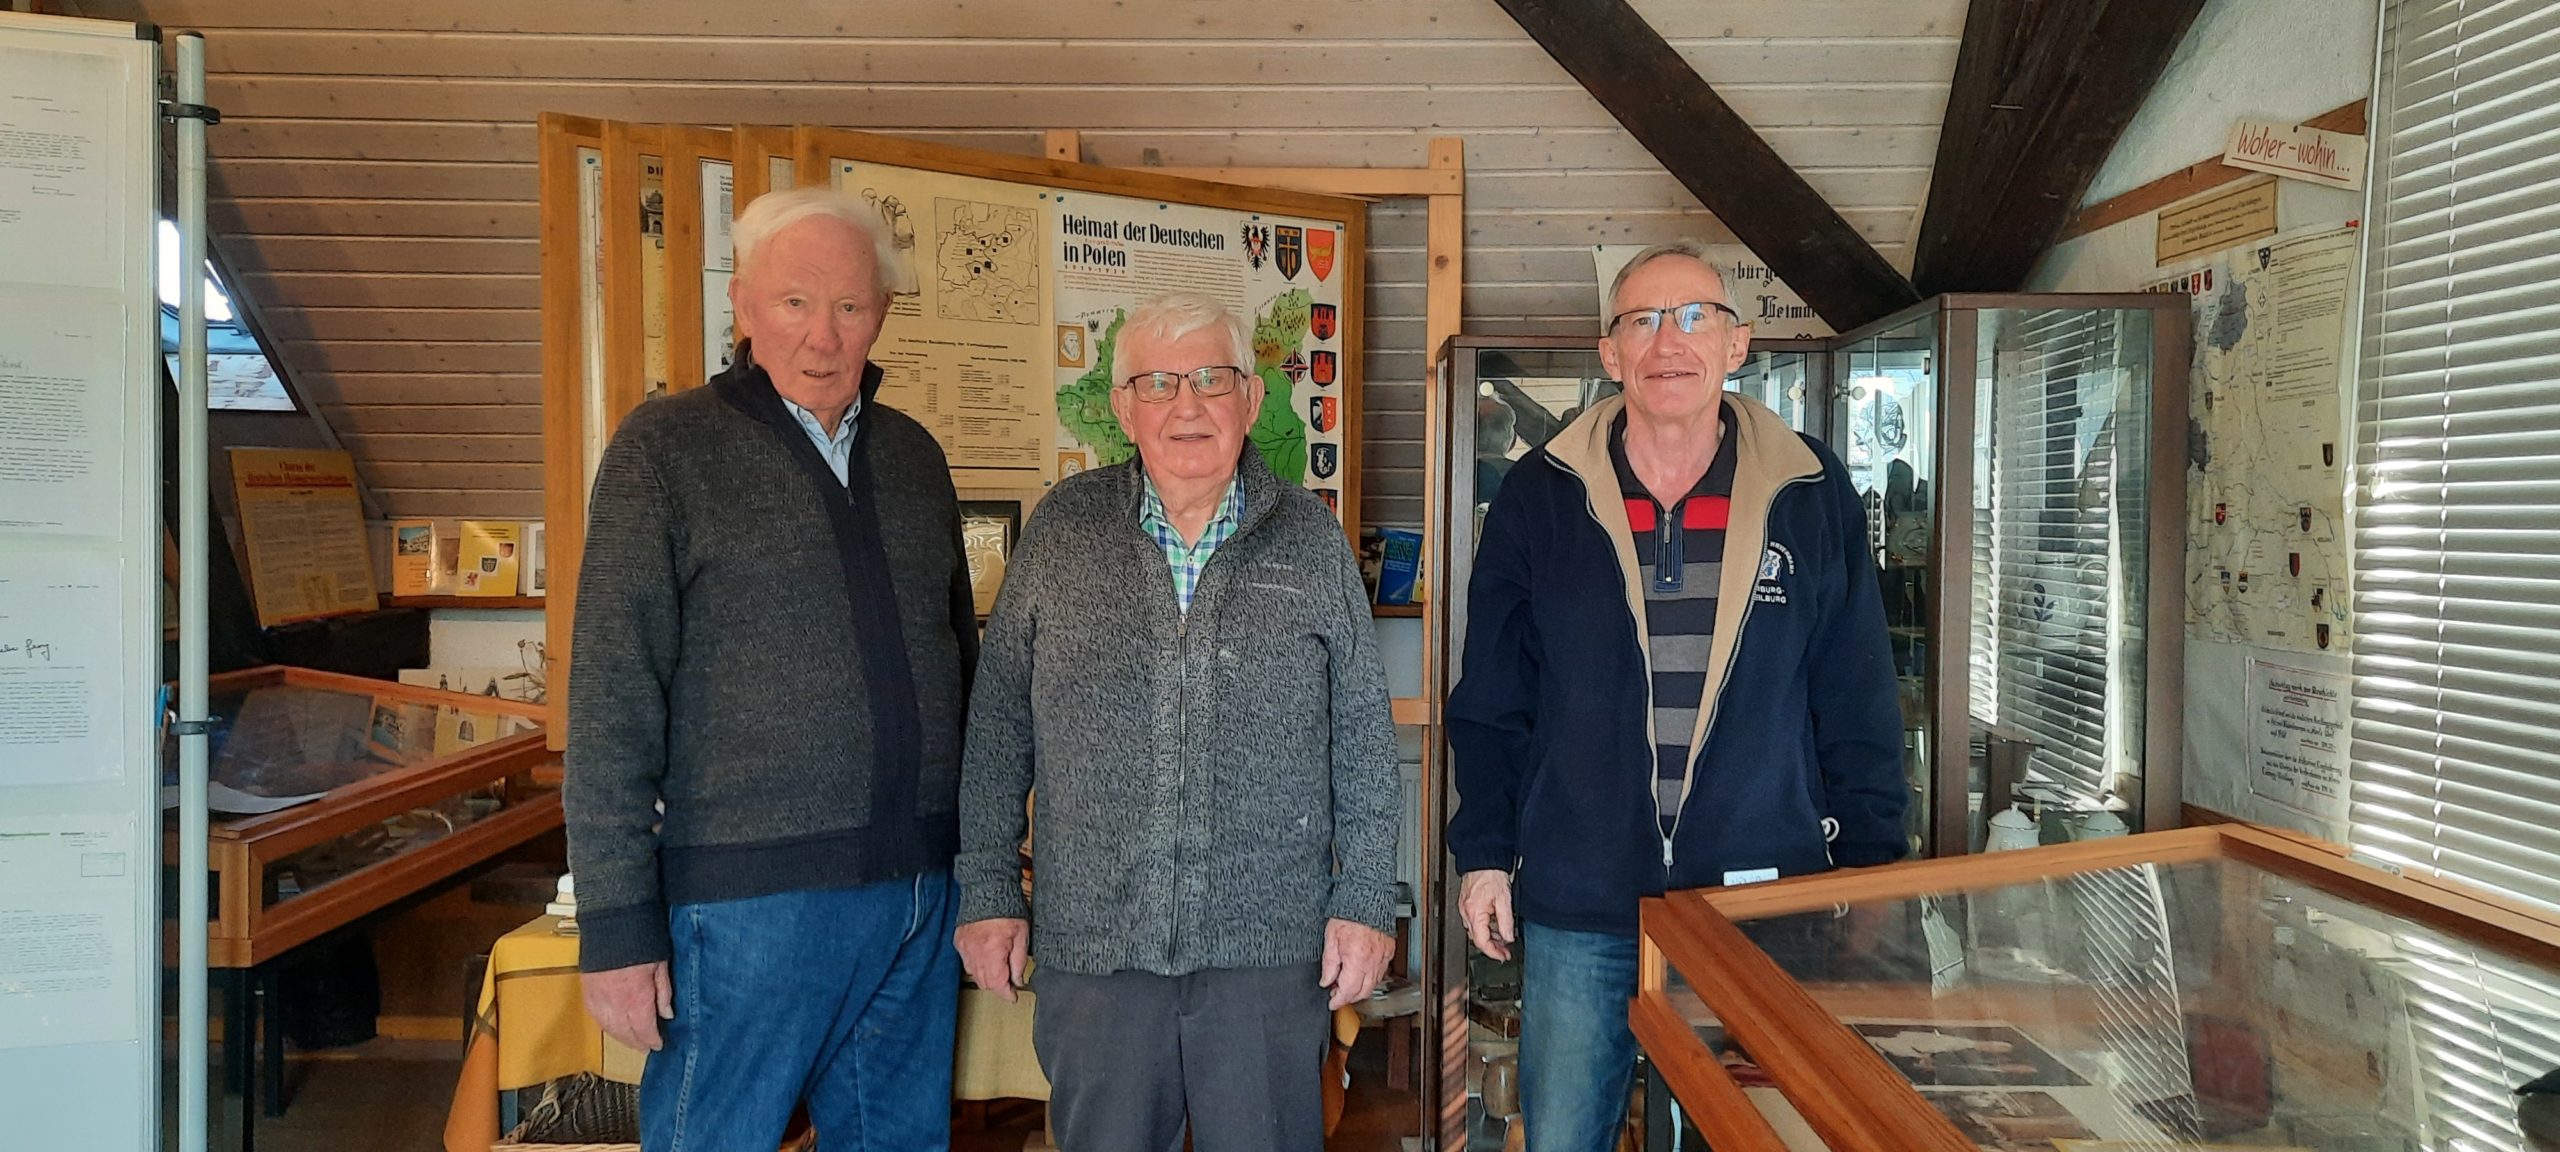 Foto: Drei Vertreter der Heimatstube Obertiefenbach in der Heimatstube zwischen Vitrinen